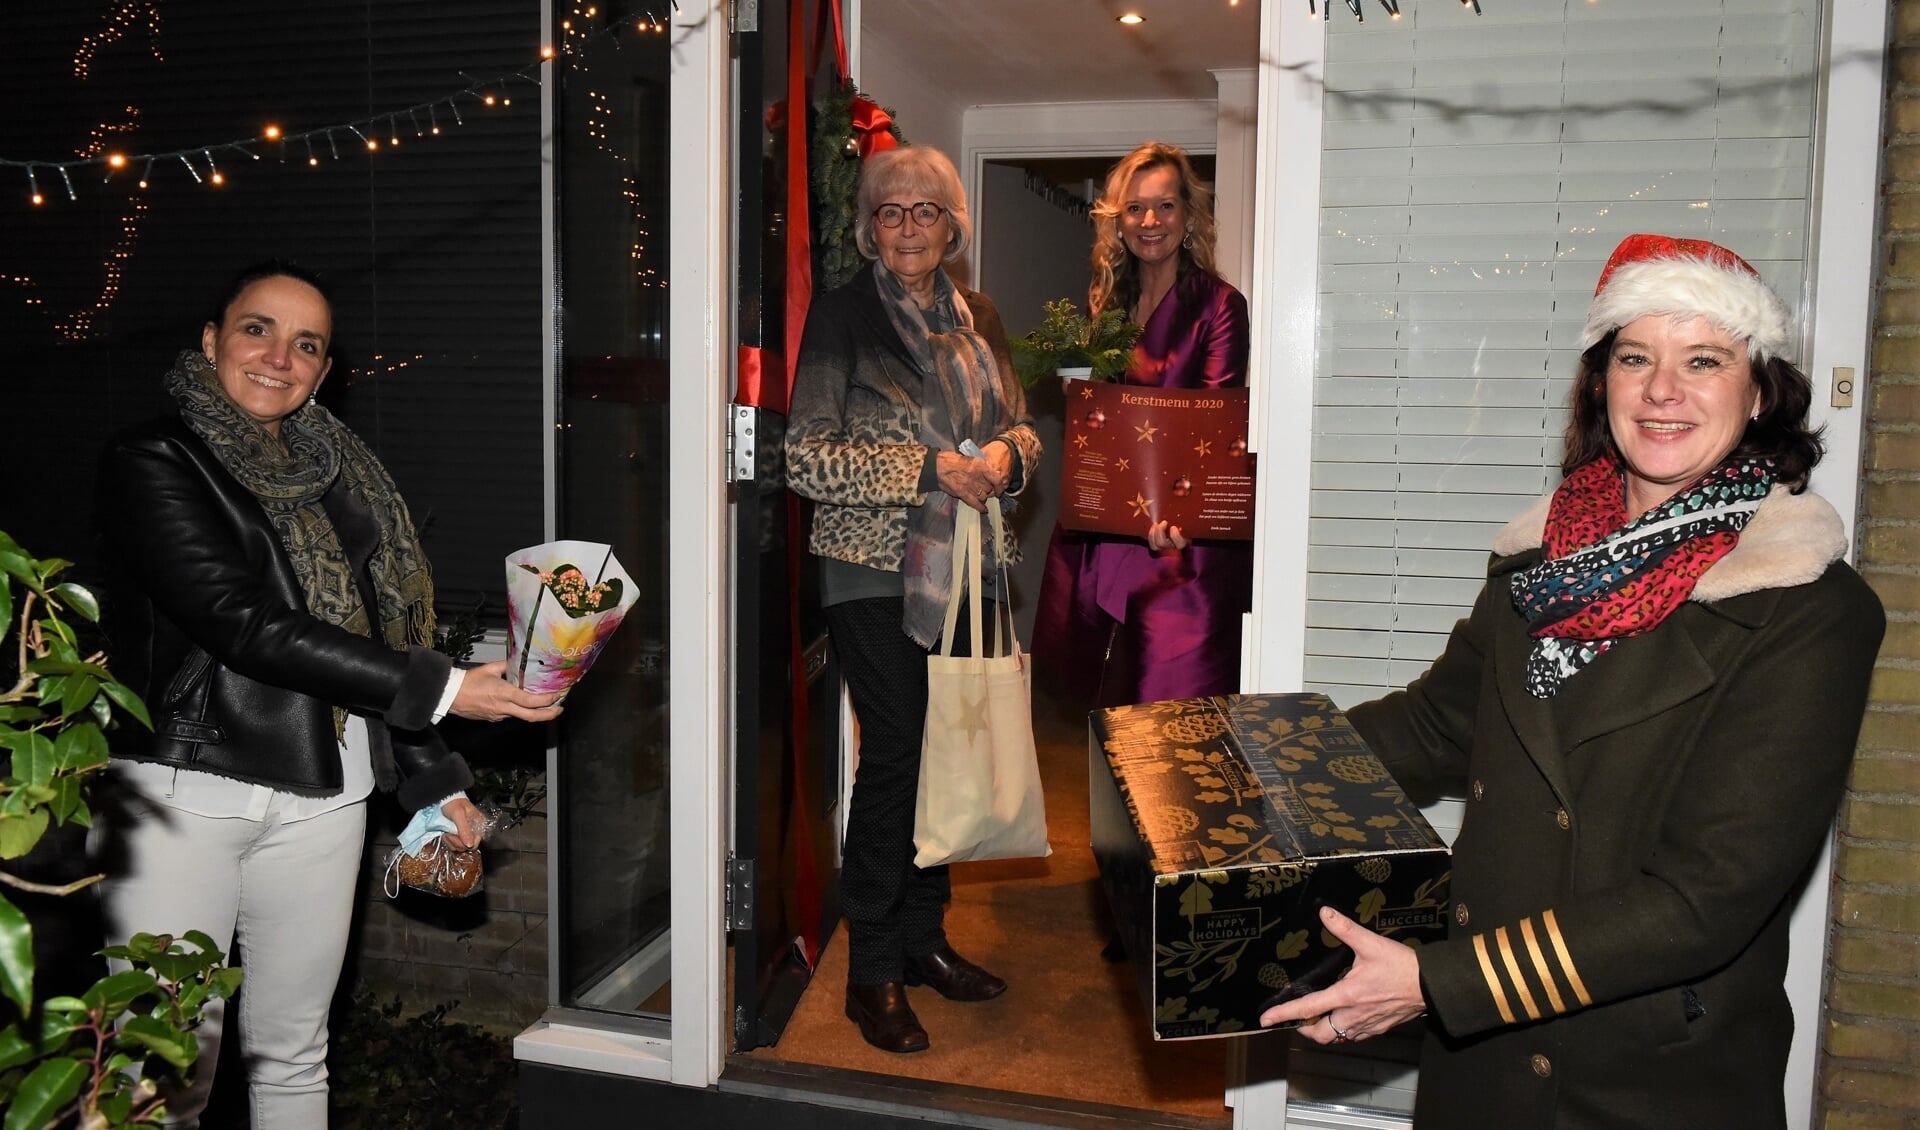 Lydie Vellema en haar gast Geertje Lagas ontvangen het diner en alle extra's uit handen van Ivonne Janka (r) en Willemien Timmers. | Foto's